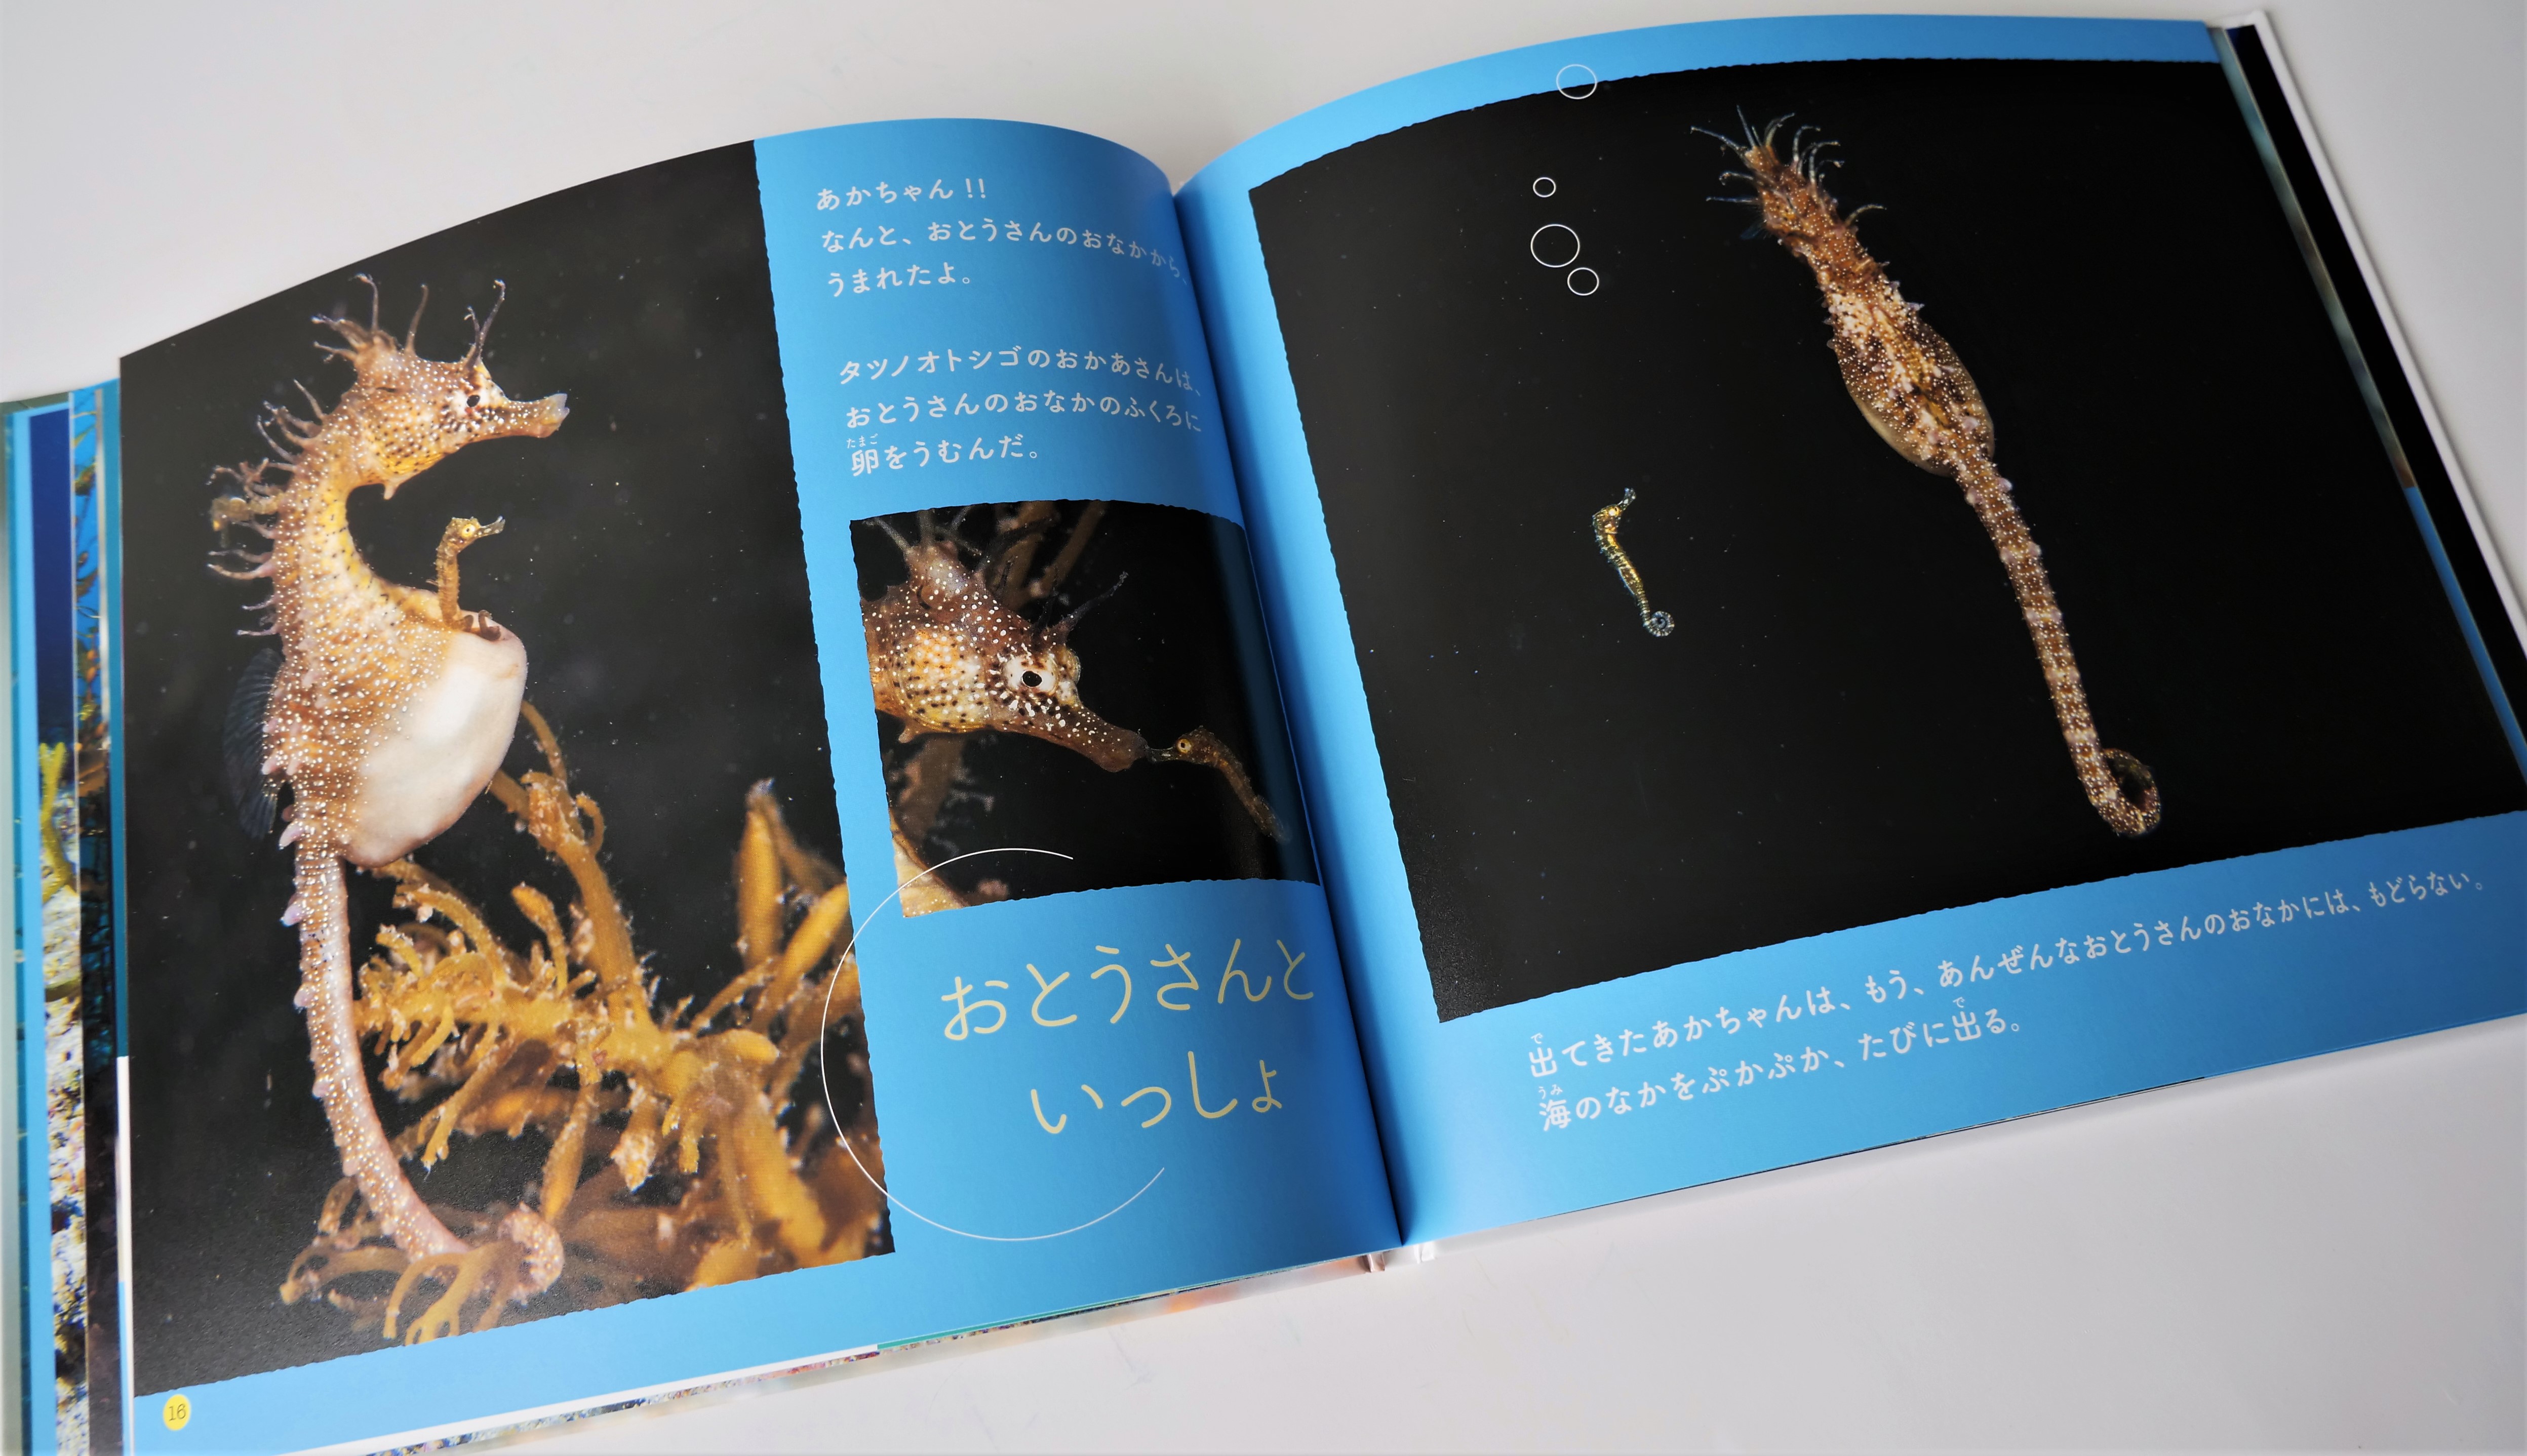 海の子がんばれ！と応援したくなる写真絵本。ドットゲインを小さくして海の生きものを明るく鮮やかに - 東京印書館 | 写真集・展覧会図録・絵本・その他印刷物の企画制作|  TOKYO INSHOKAN PRINTING CO.